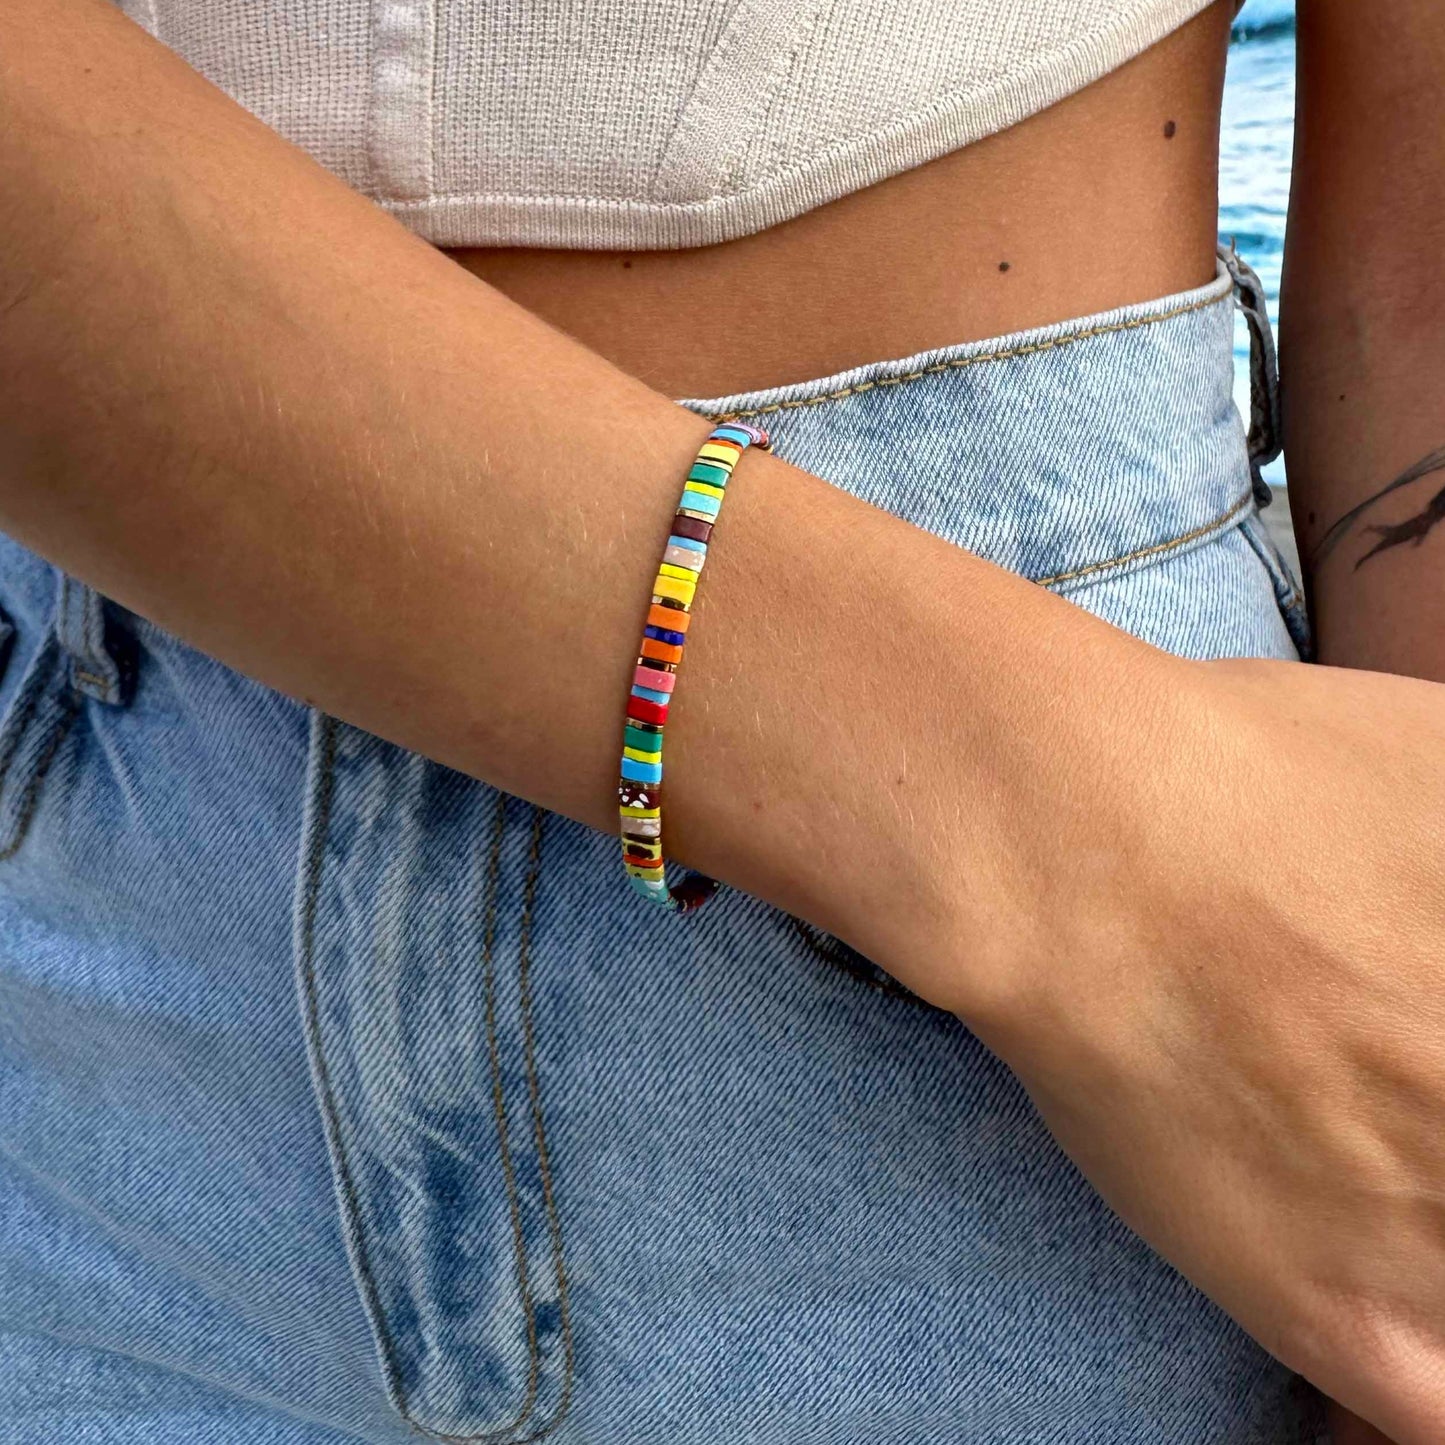 Malibu - stackable stretch bracelet